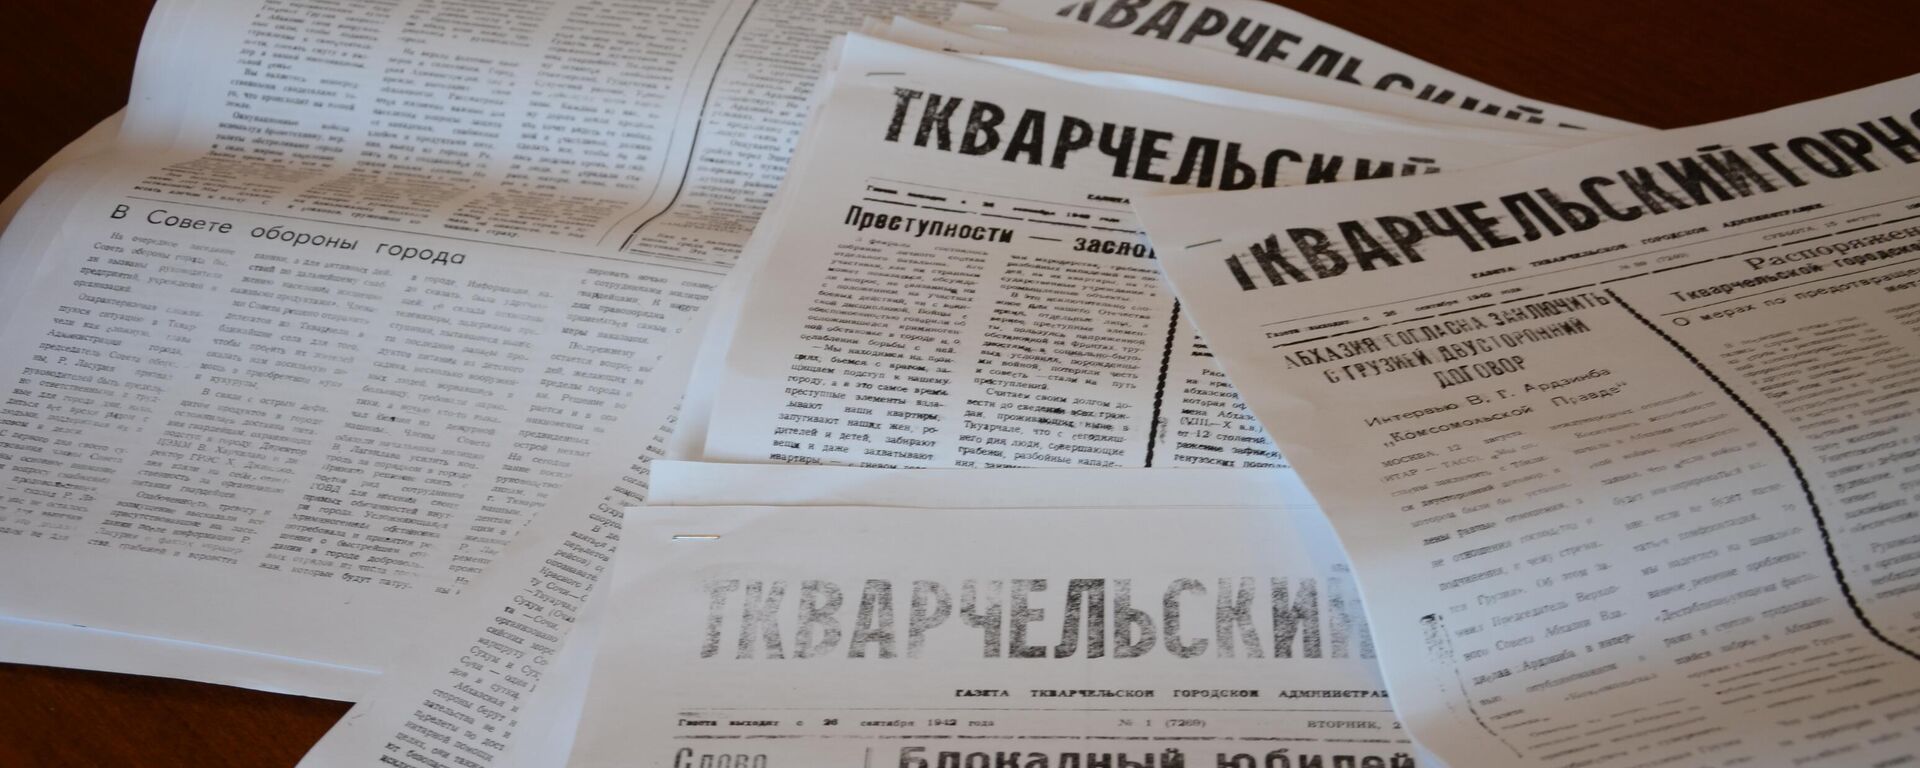 Ткварчельский Горняк газета  - Sputnik Абхазия, 1920, 30.09.2022